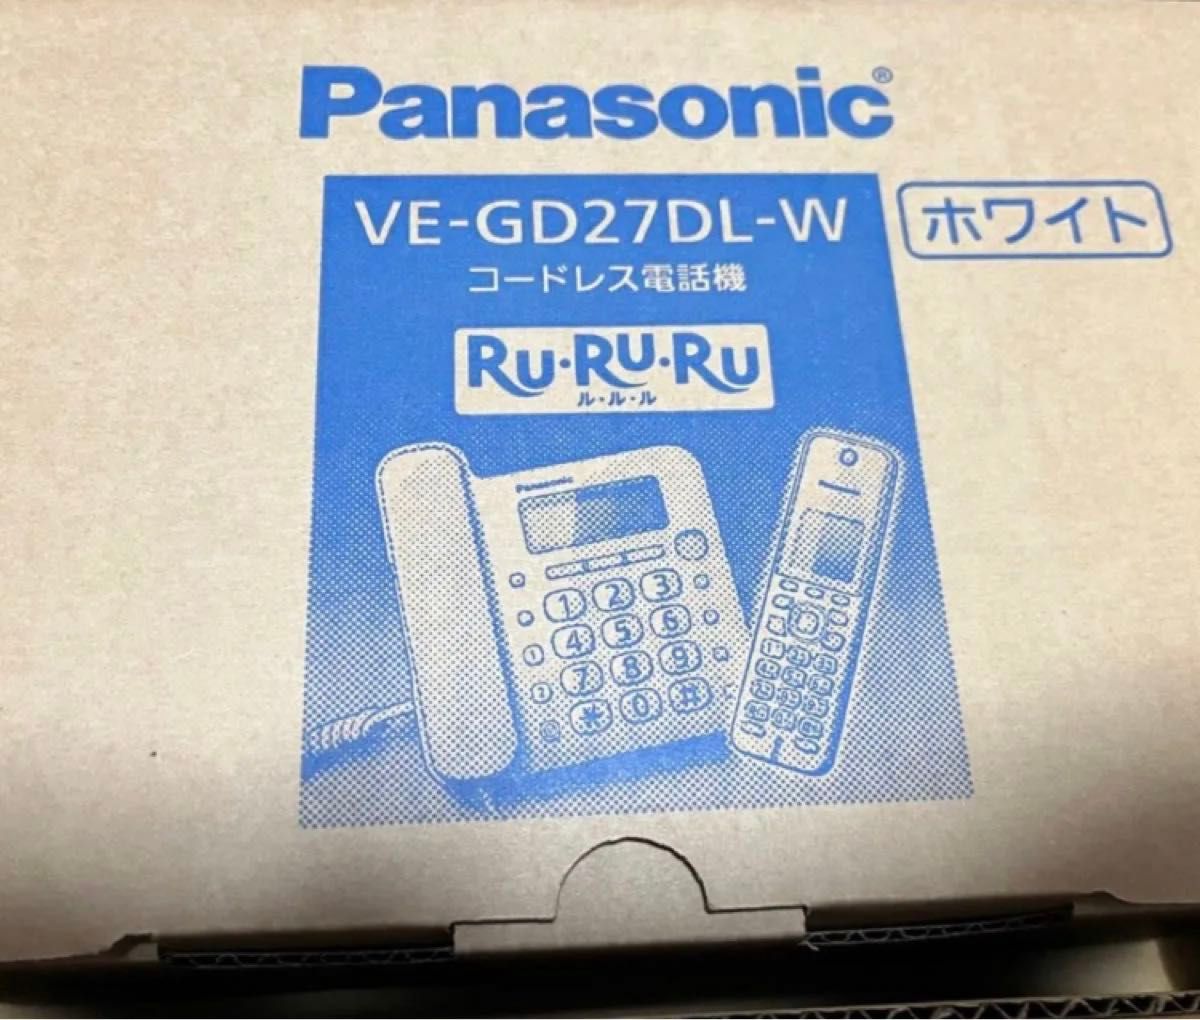 コードレス電話機 VE-GD27DL 2台セット（子機も2台・ホワイト） Panasonicパナソニック